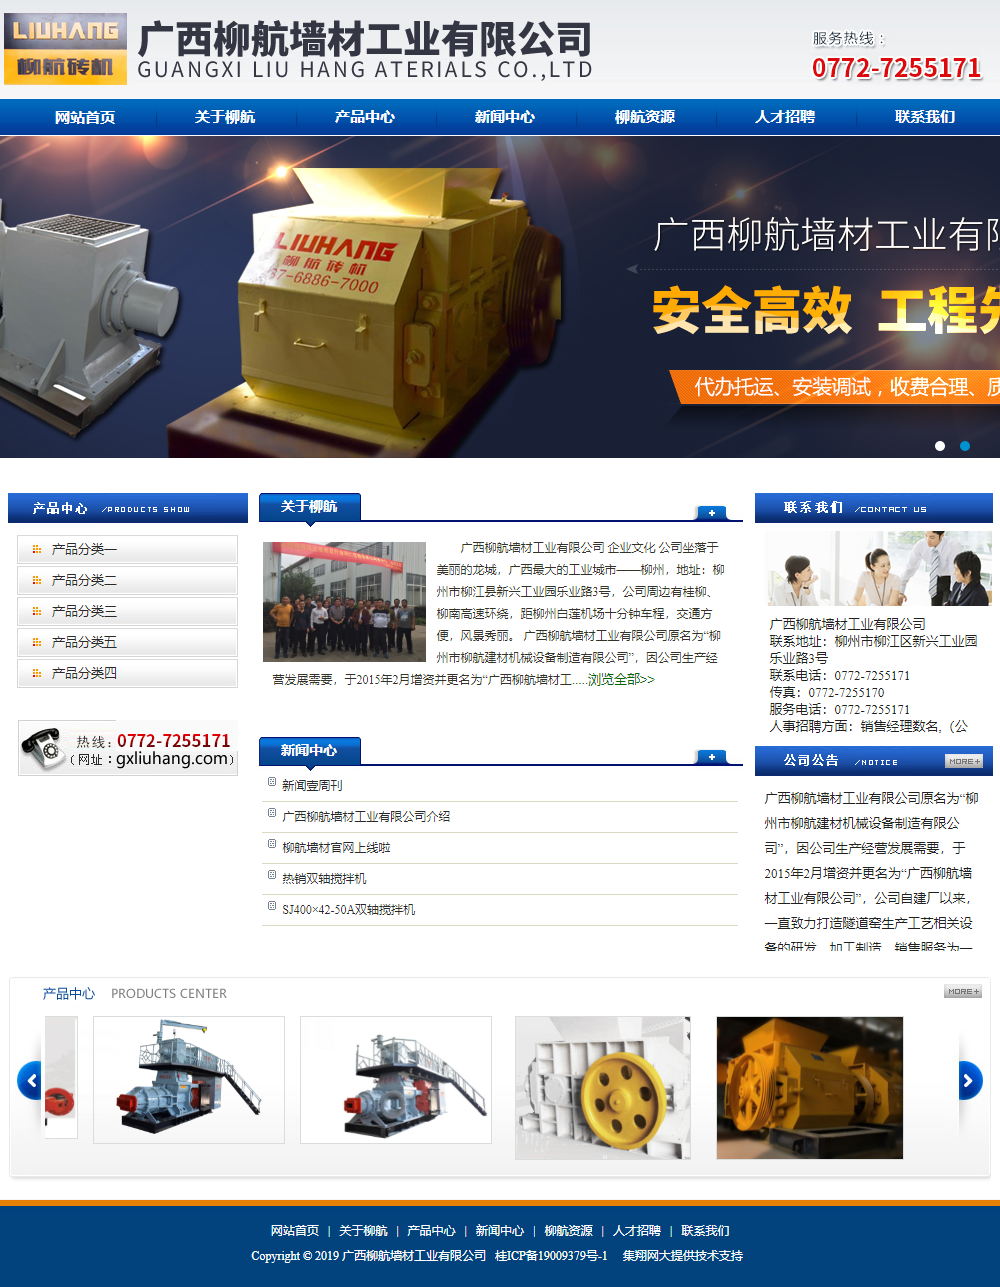 广西柳航墙材工业有限公司网站案例